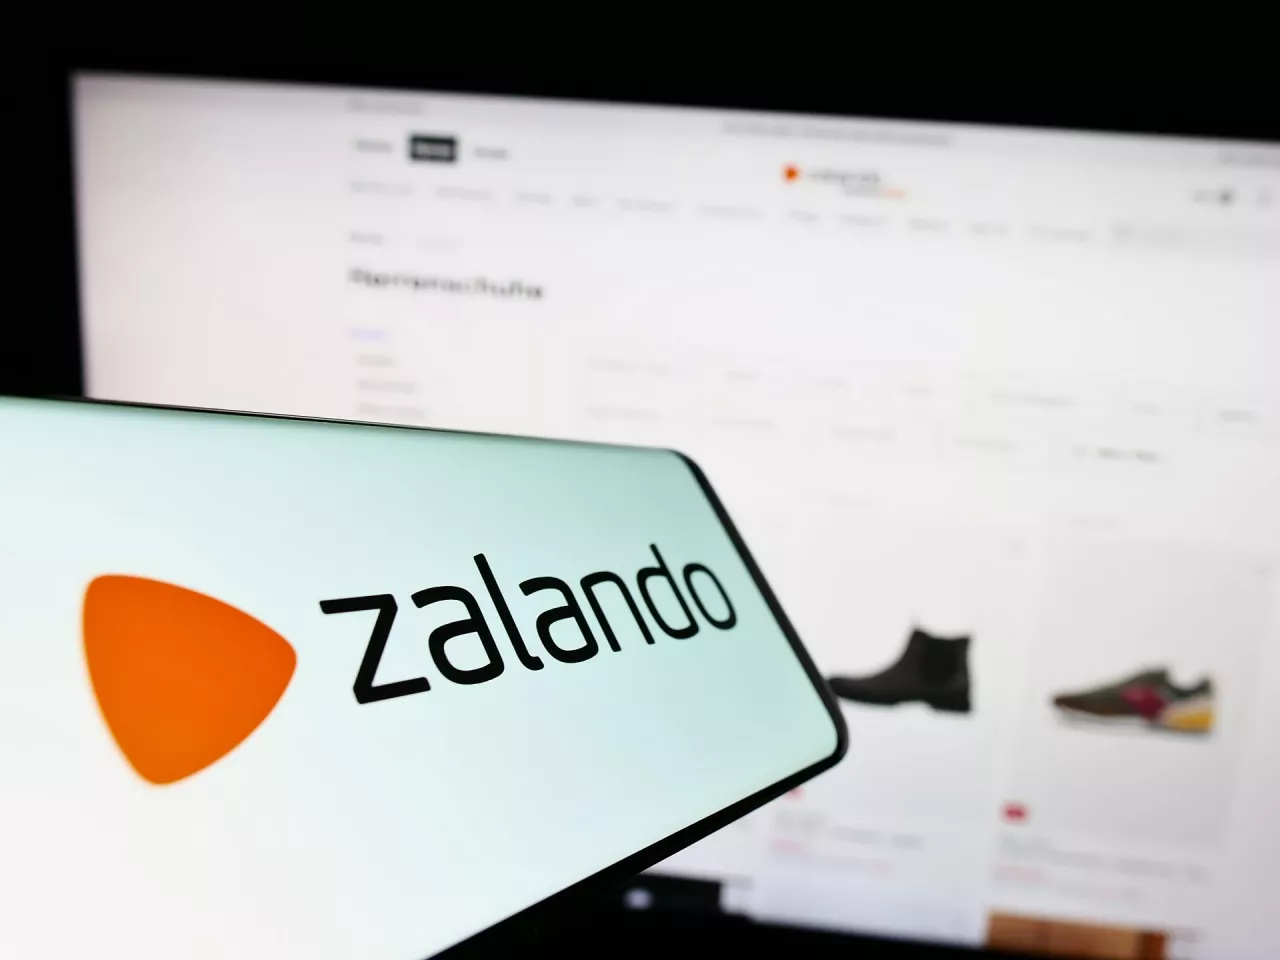 Prezes UOKiK zobowiązał Zalando do zmiany sposobu informowania klientów i prawach przysługujących im podczas korzystania z platformy zakupowej i zamawiania produktów od partnerów Zalando (fot. Shutterstock)